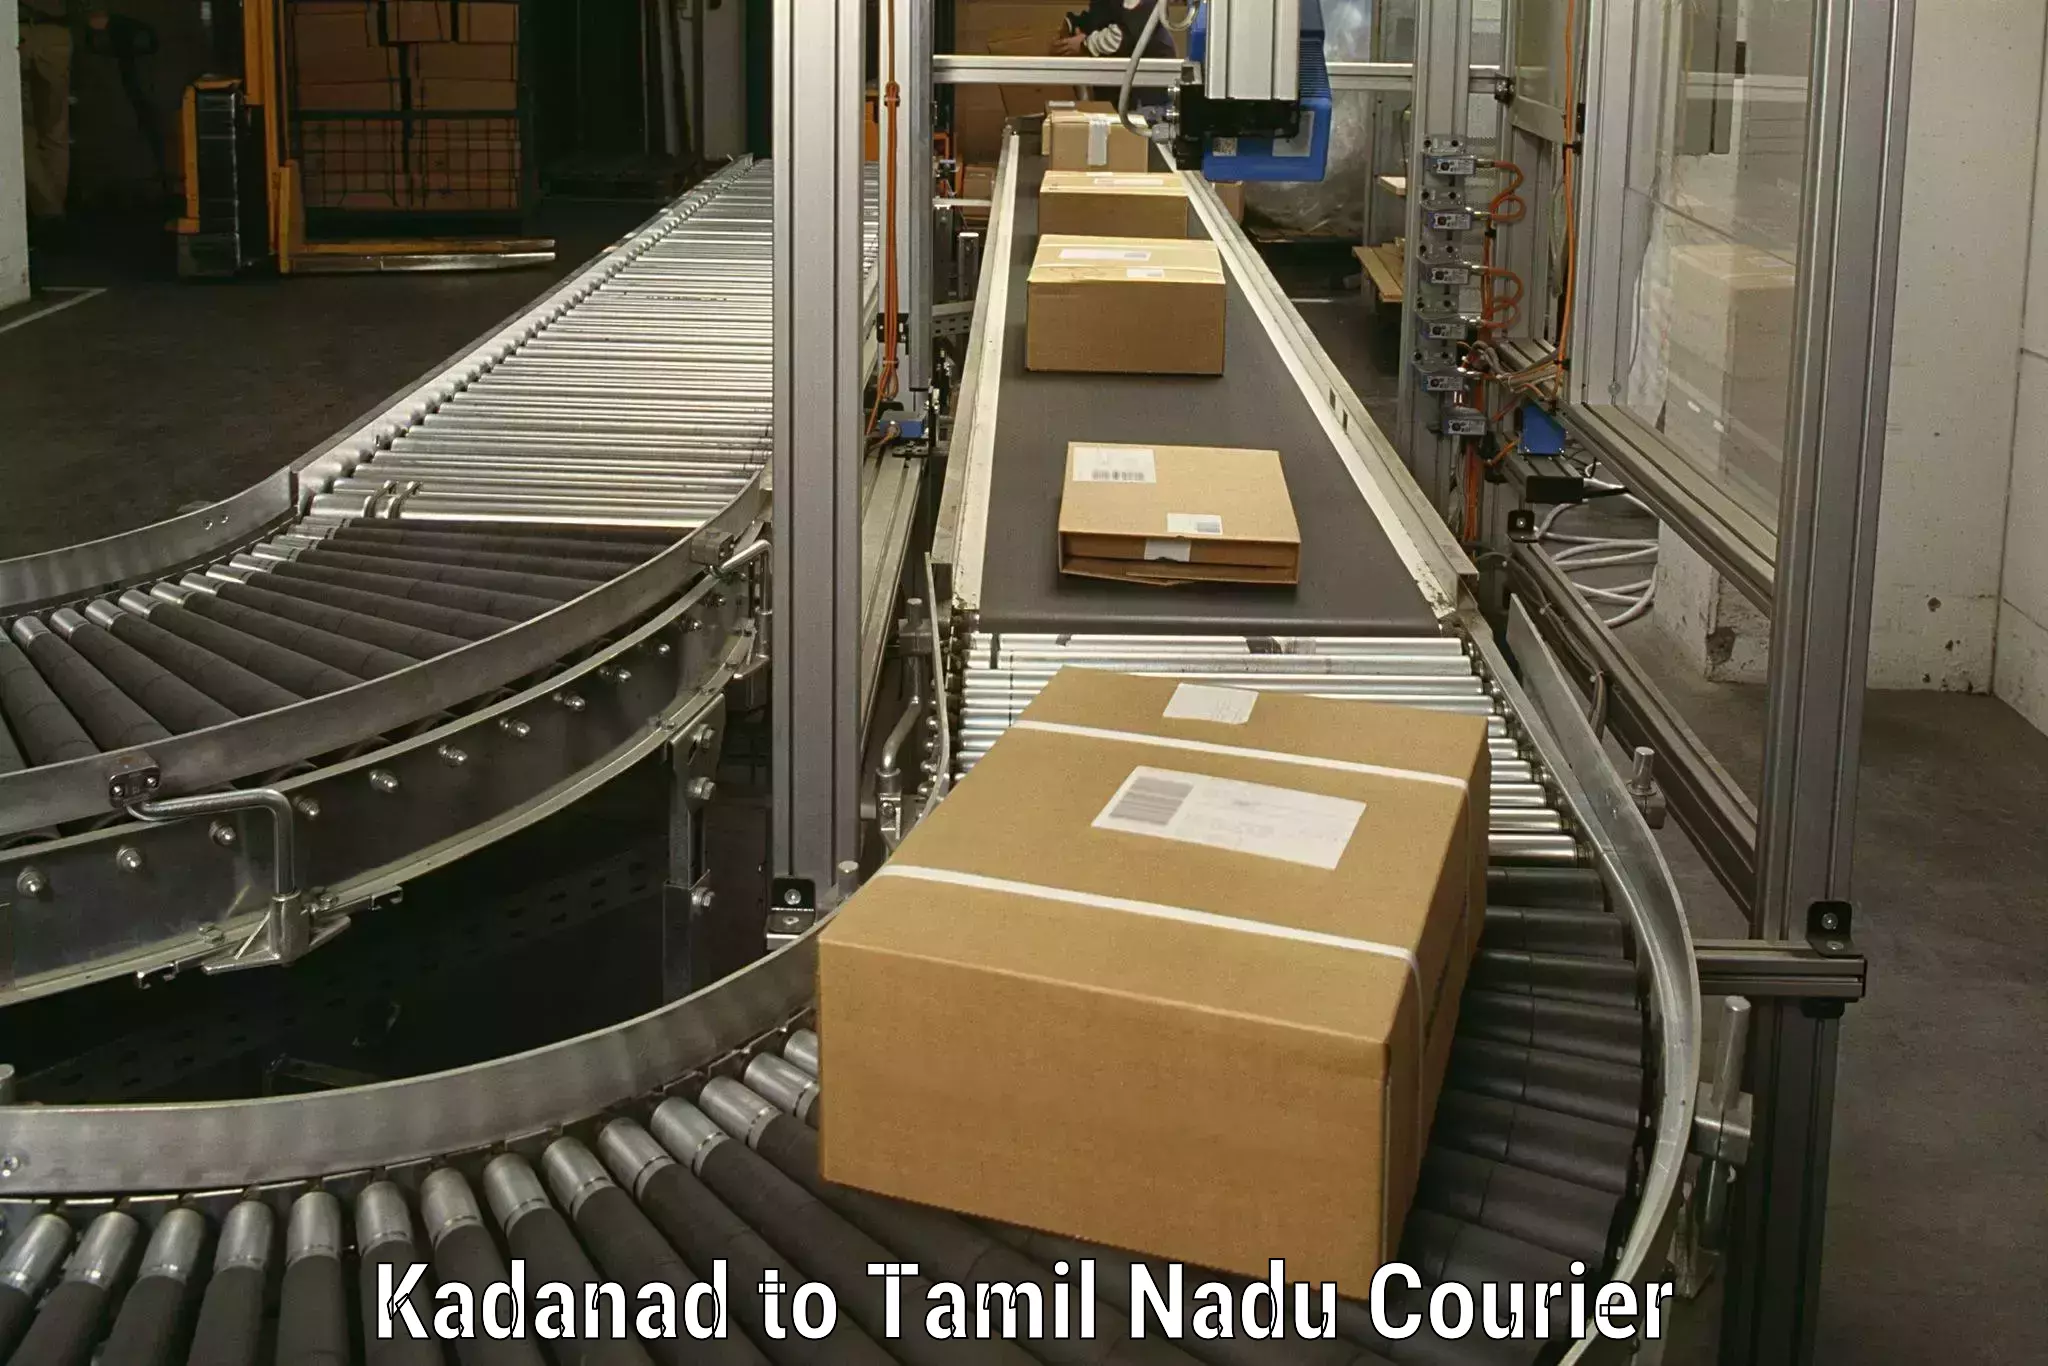 Household goods transport service Kadanad to Thiruvadanai